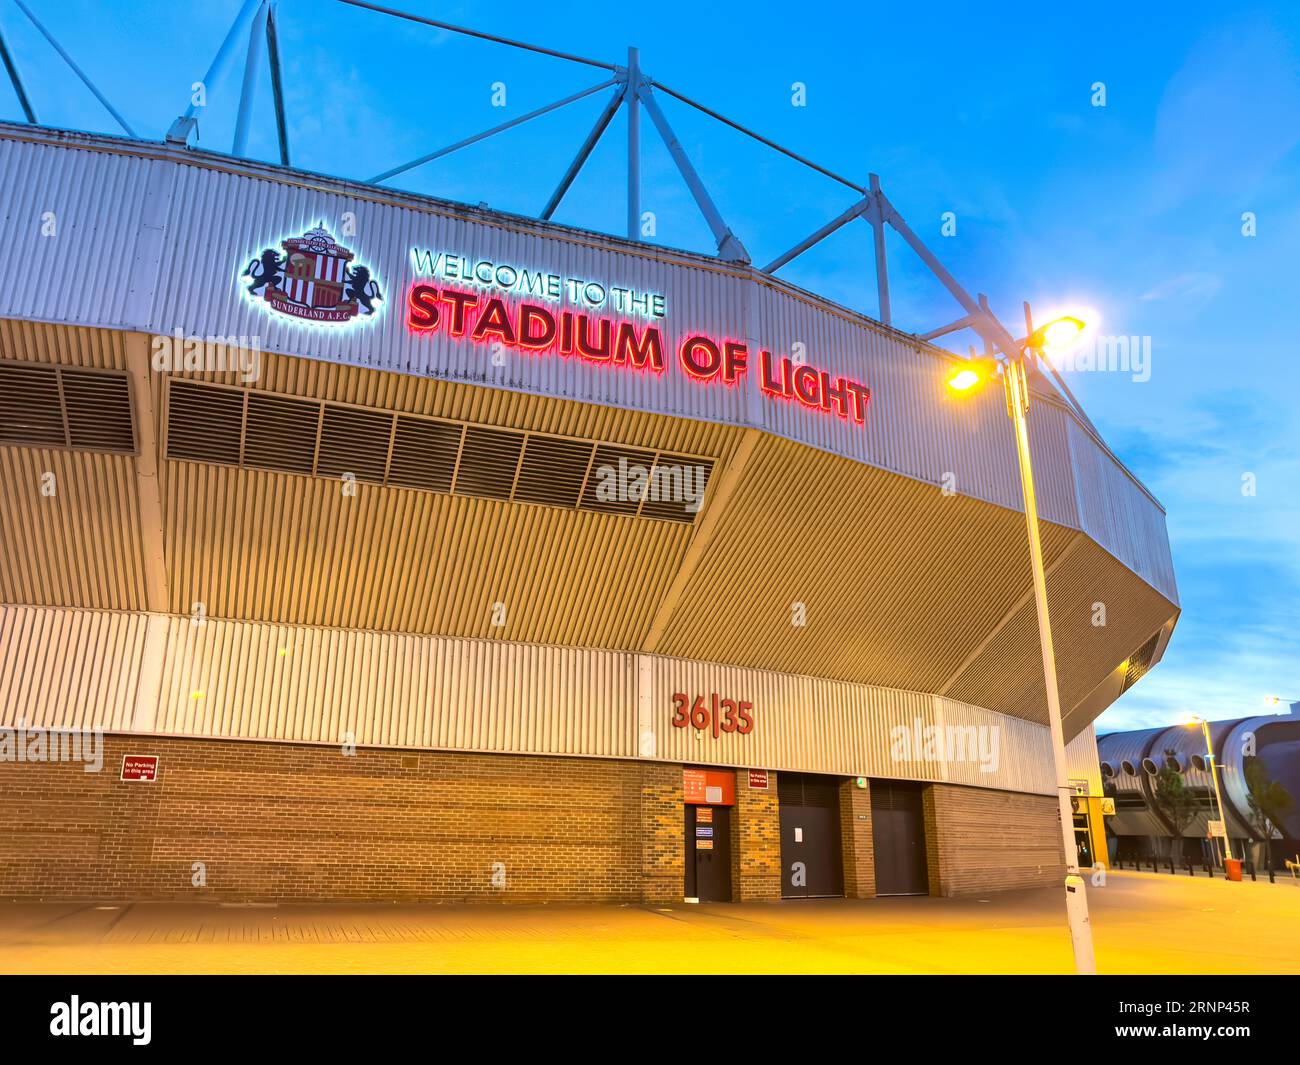 Le stade de la lumière au crépuscule, Vaux façon Brasserie, bergeries, Sunderland, Tyne et Wear, Angleterre, Royaume-Uni Banque D'Images